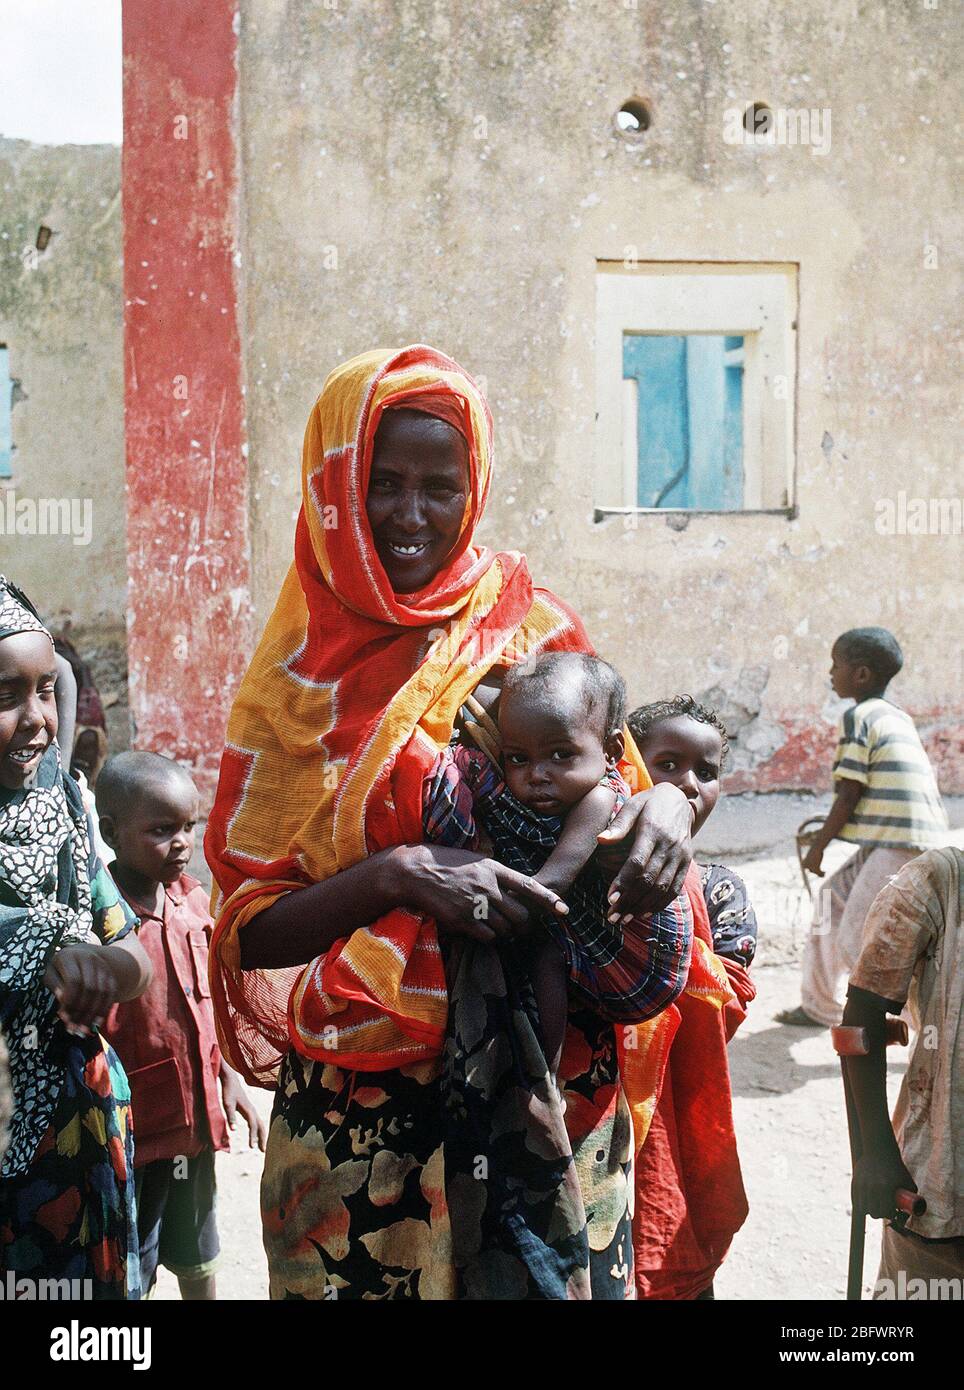 1993 - Una mujer somalí posa con algunos niños durante el esfuerzo de socorro multinacional operación Restaurar la esperanza. Foto de stock